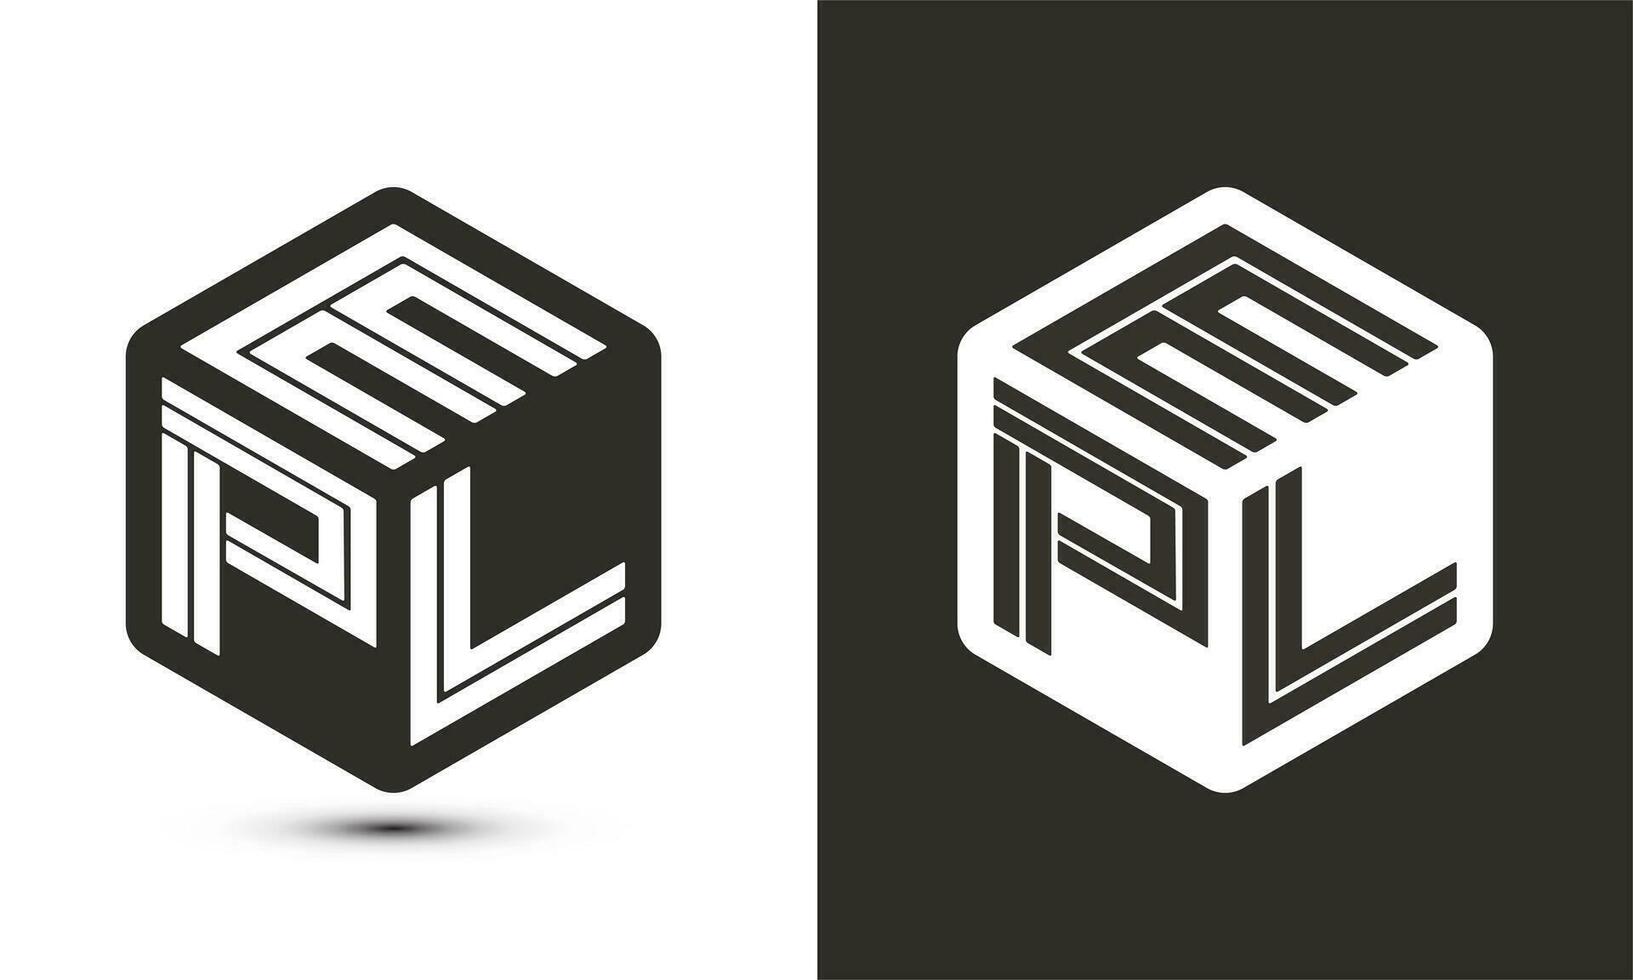 epl brief logo ontwerp met illustrator kubus logo, vector logo modern alfabet doopvont overlappen stijl.